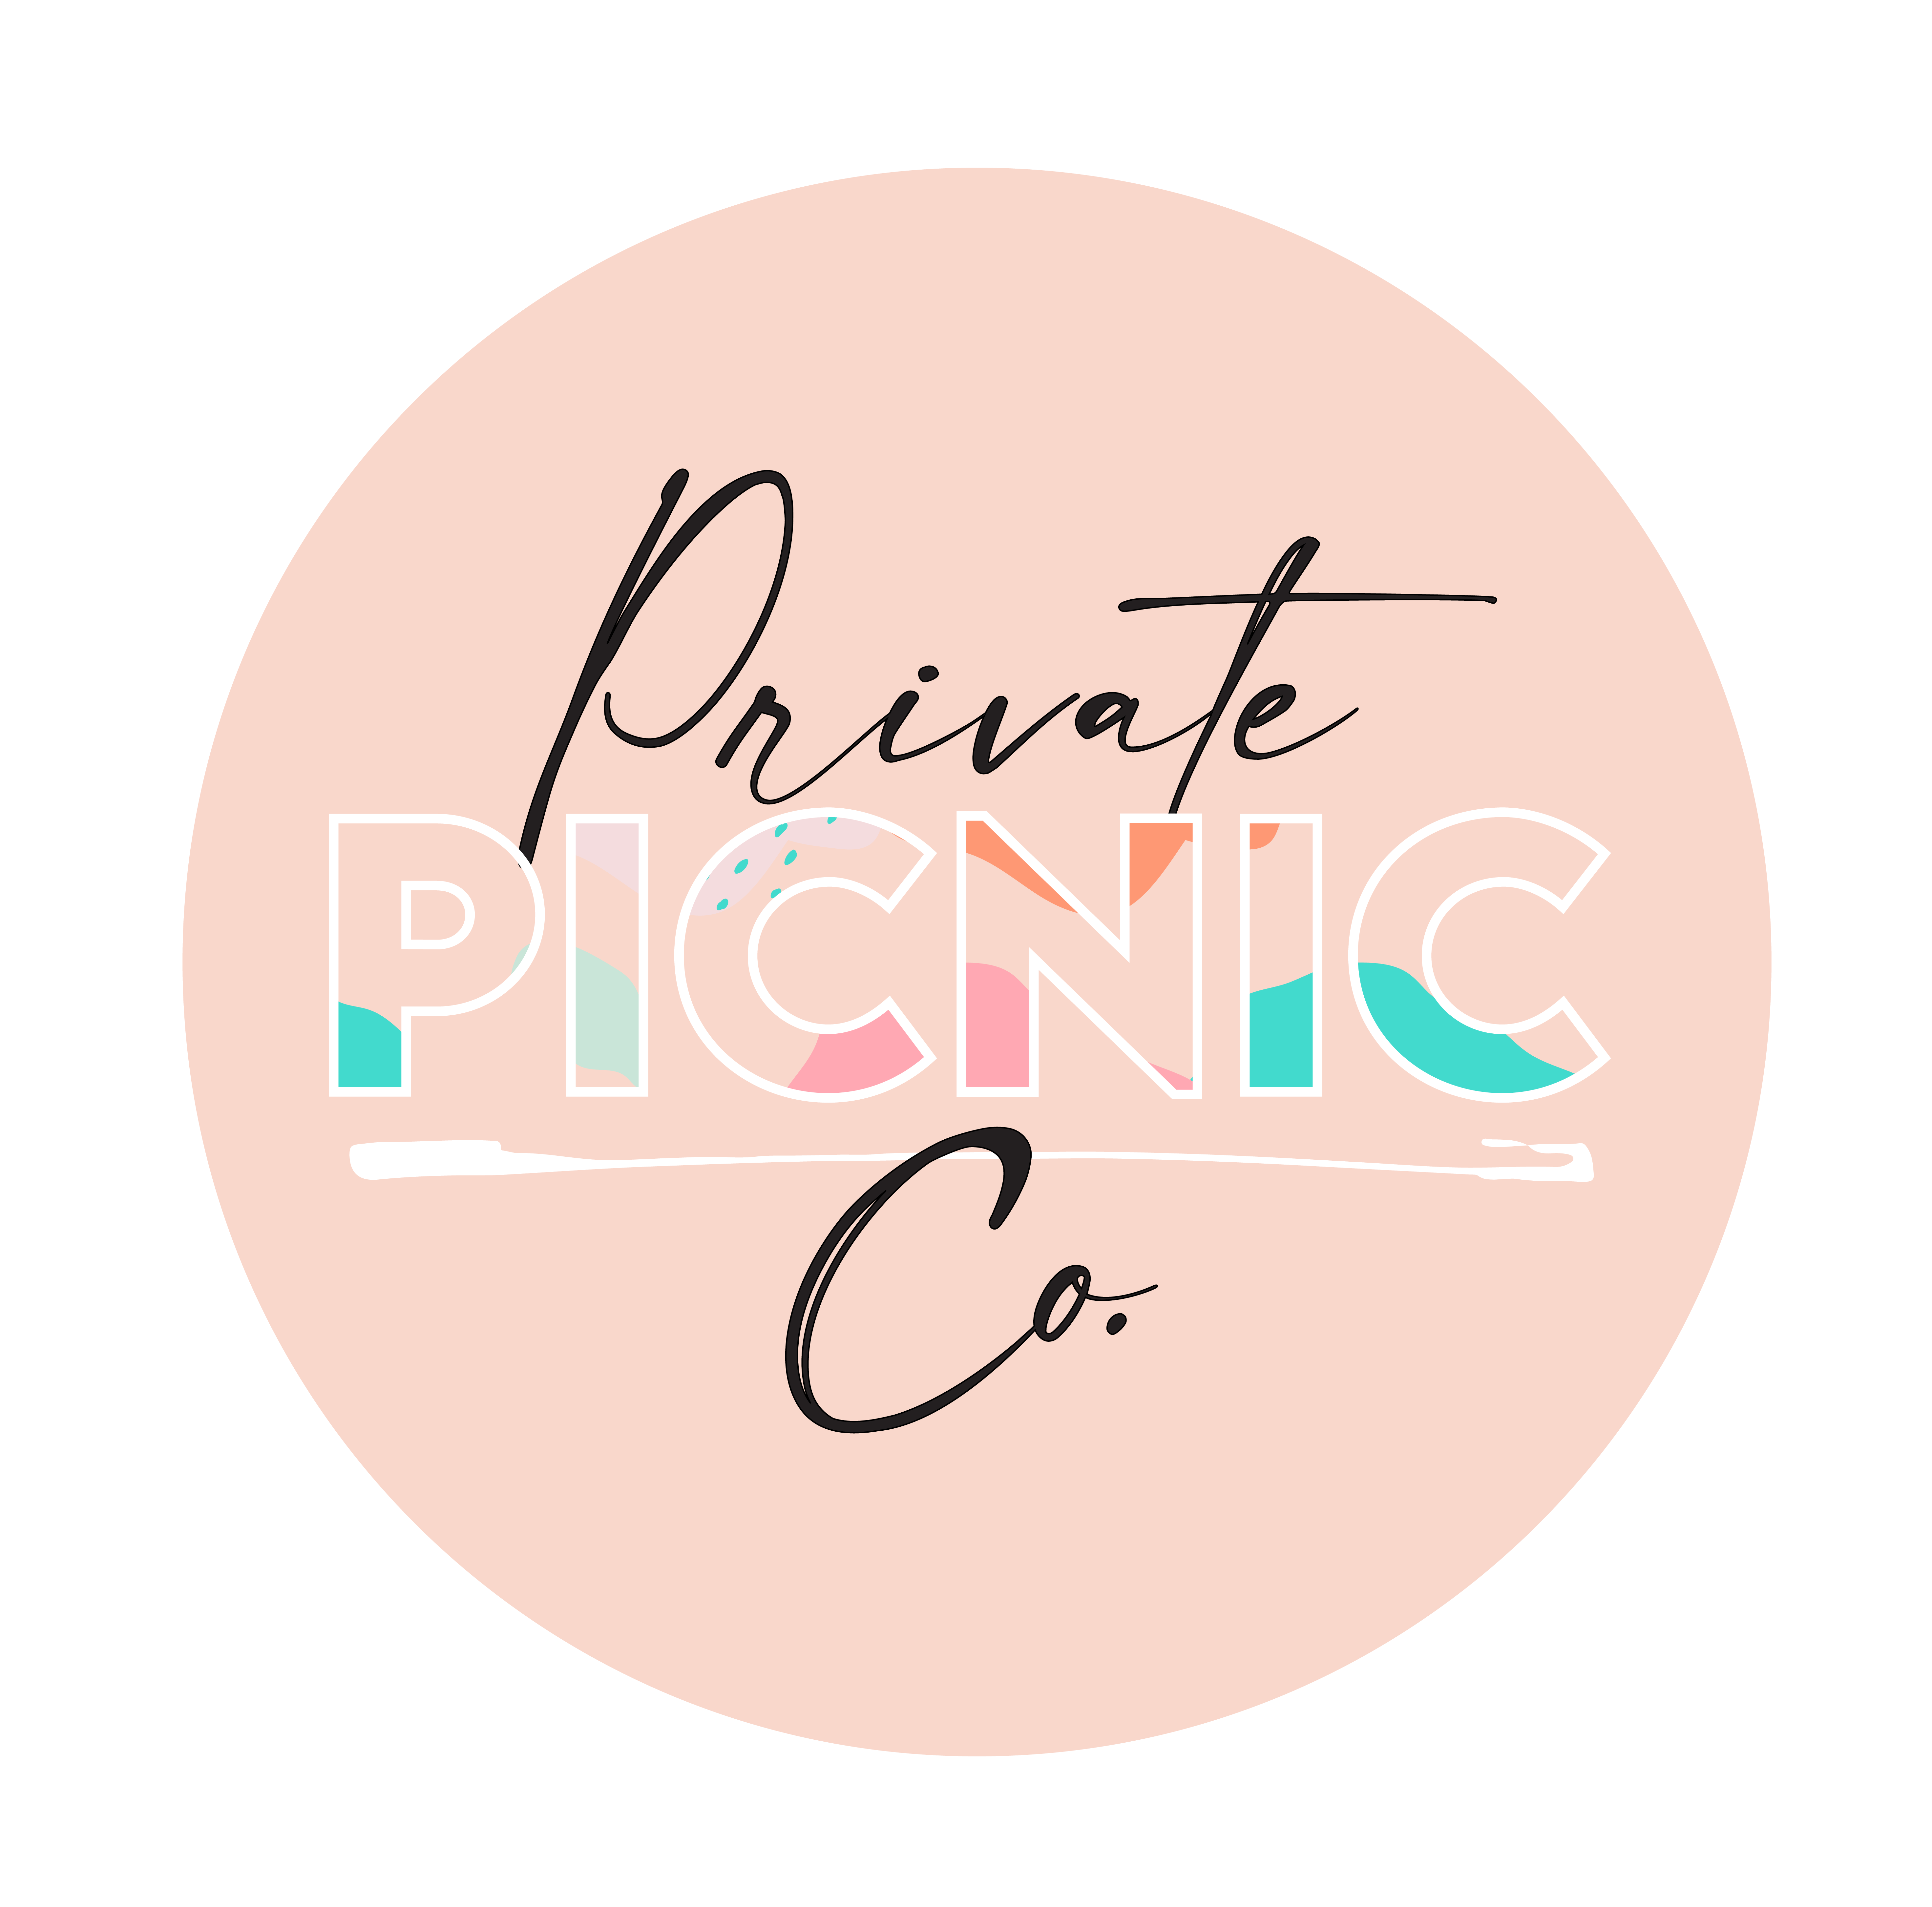 Private Picnic Co